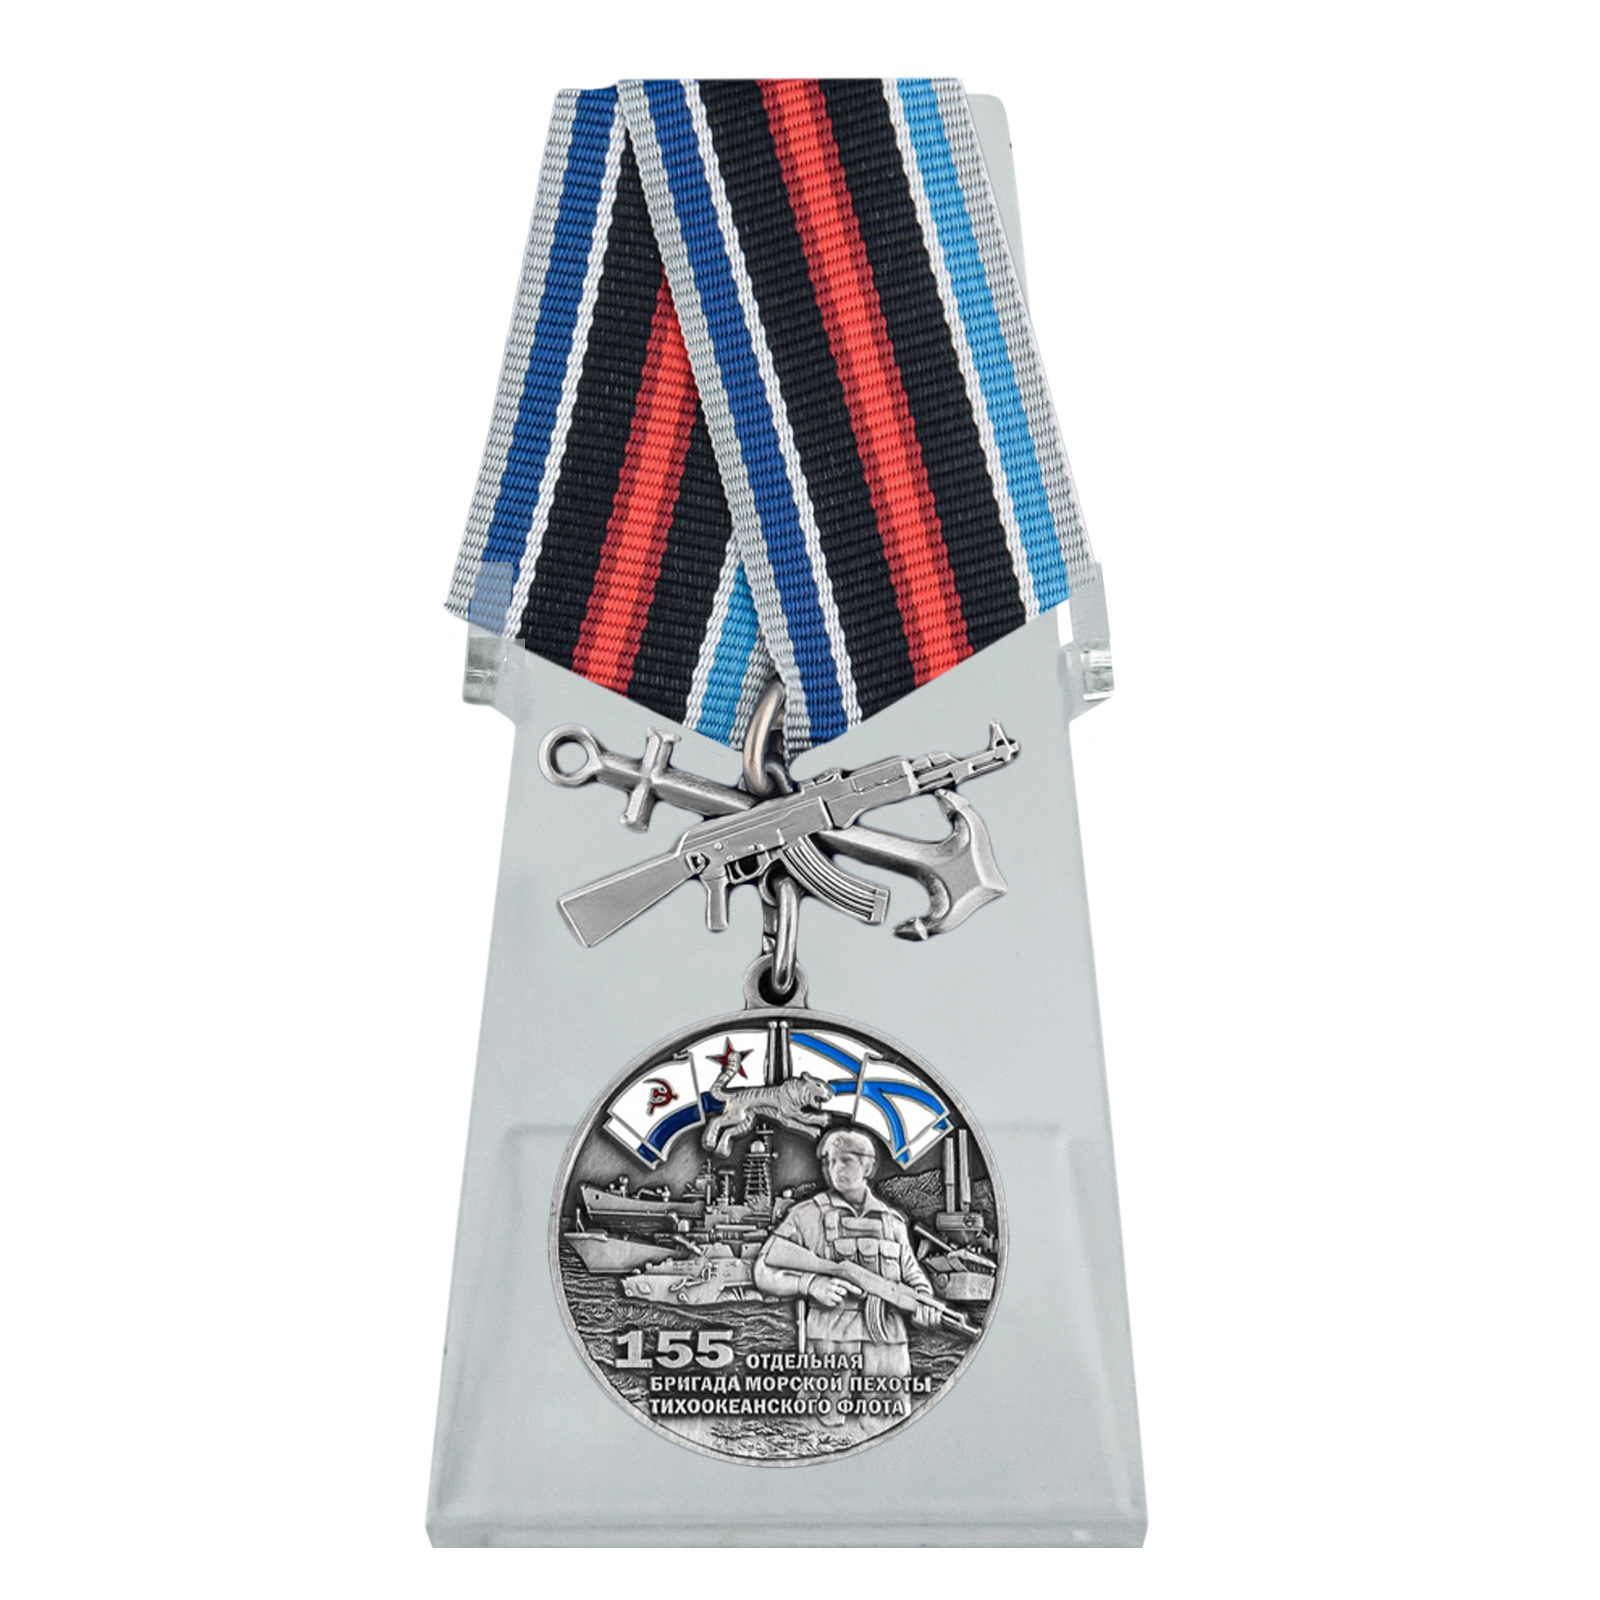 Купить медаль 155-я отдельная бригада морской пехоты ТОФ на подставке выгодно